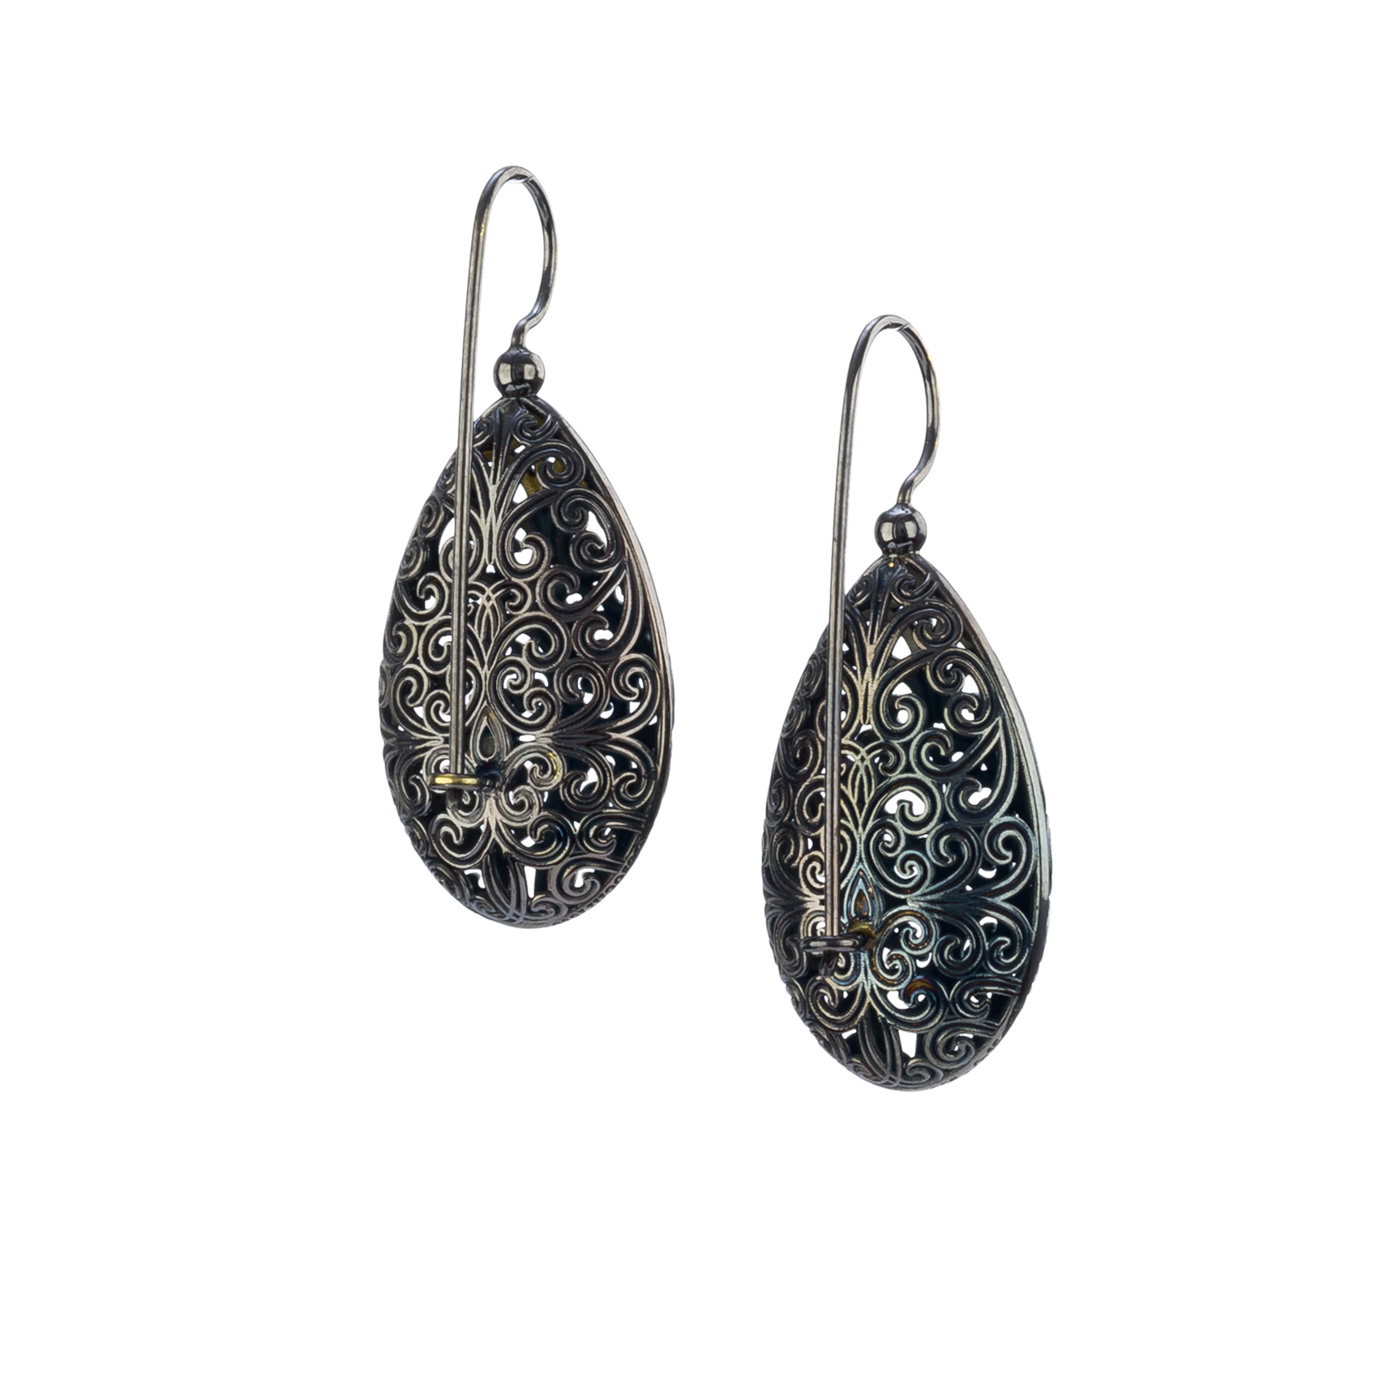 Kallisto teardrop earrings in Black plated silver 925